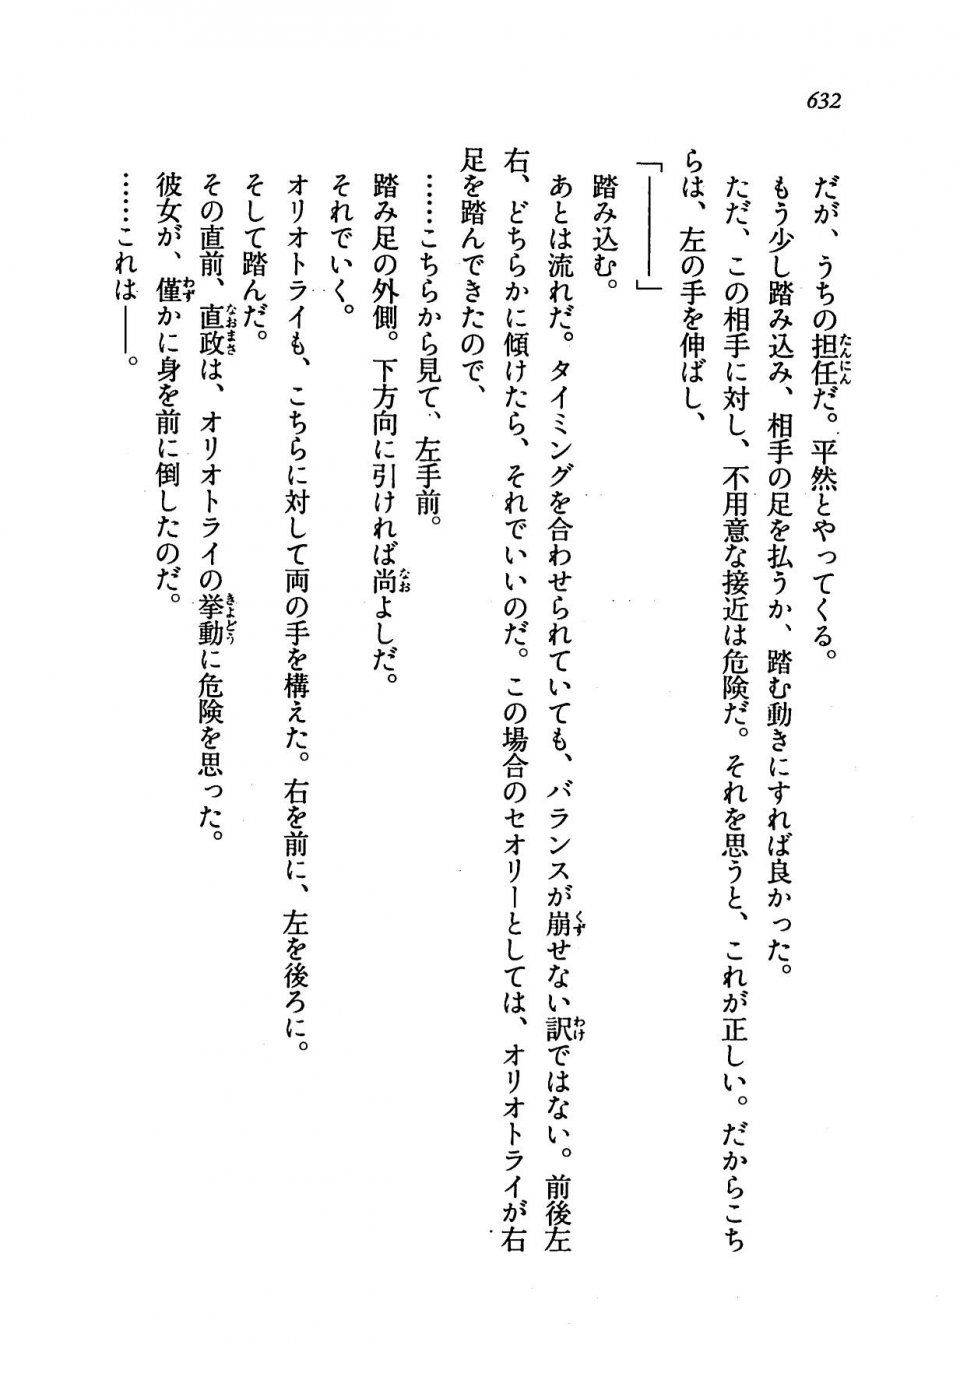 Kyoukai Senjou no Horizon LN Vol 19(8A) - Photo #632